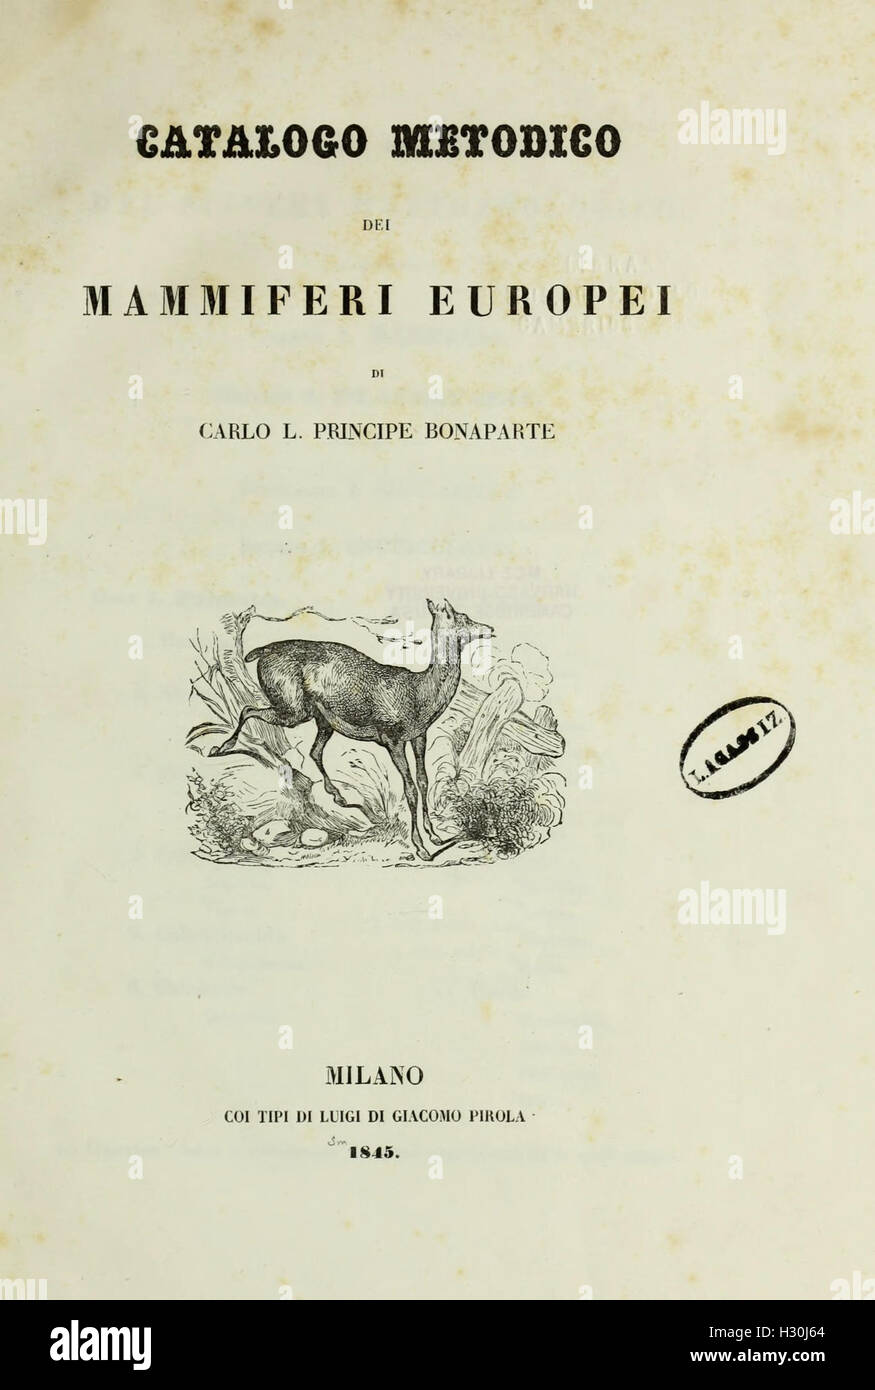 Catalogo metodico dei mammiferi europei BHL435 Stock Photo